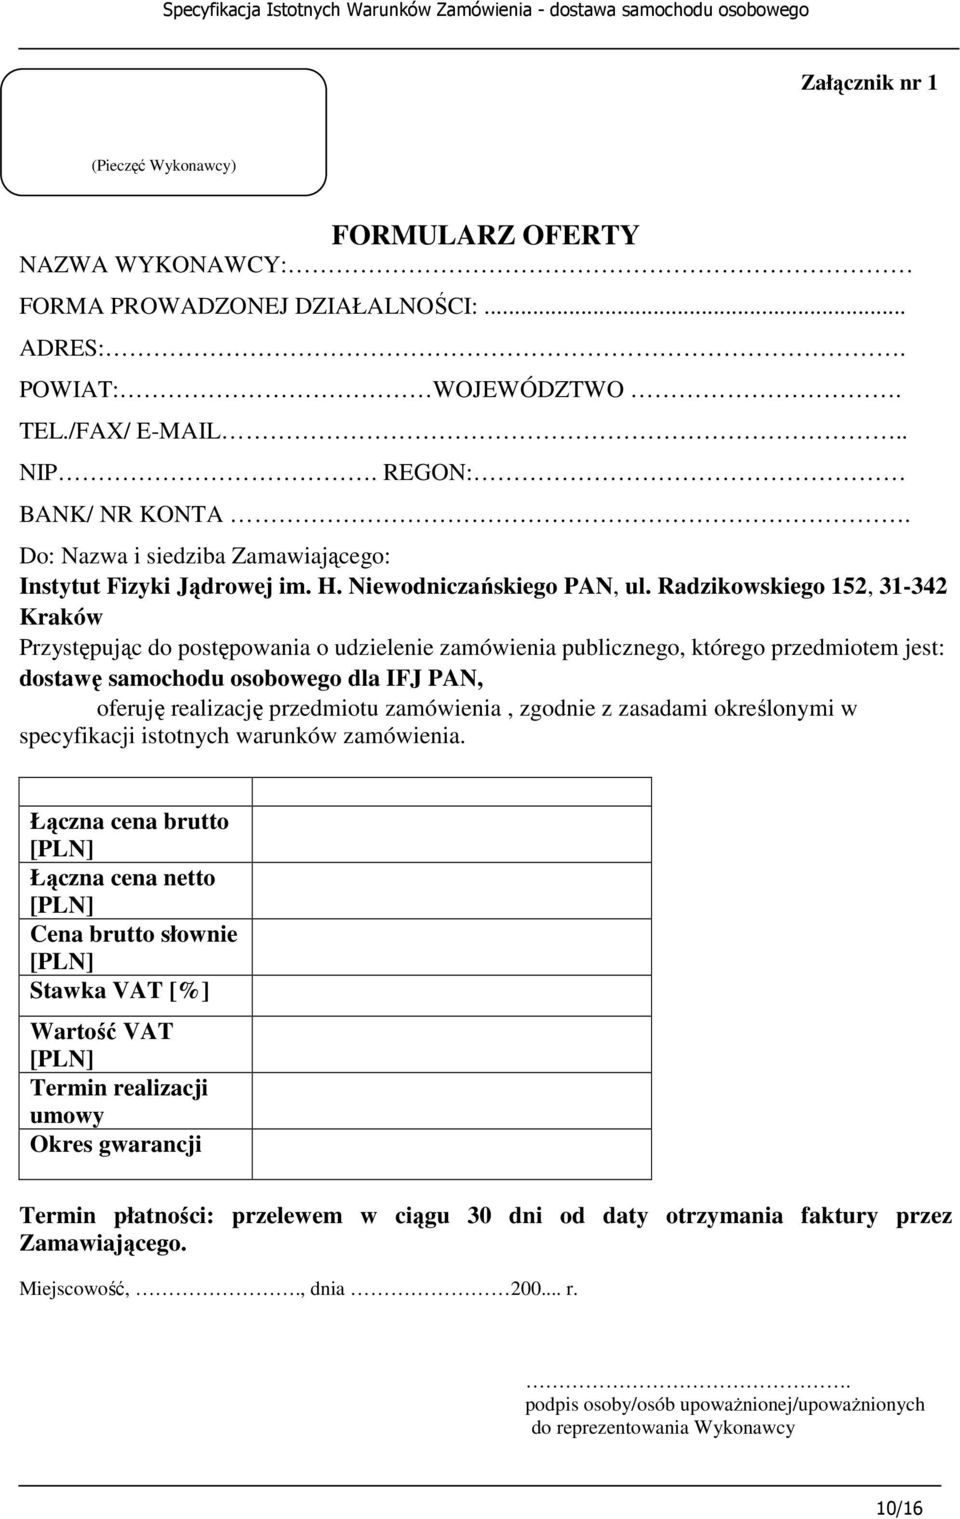 Radzikowskiego 152, 31-342 Kraków Przystępując do postępowania o udzielenie zamówienia publicznego, którego przedmiotem jest: dostawę samochodu osobowego dla IFJ PAN, oferuję realizację przedmiotu